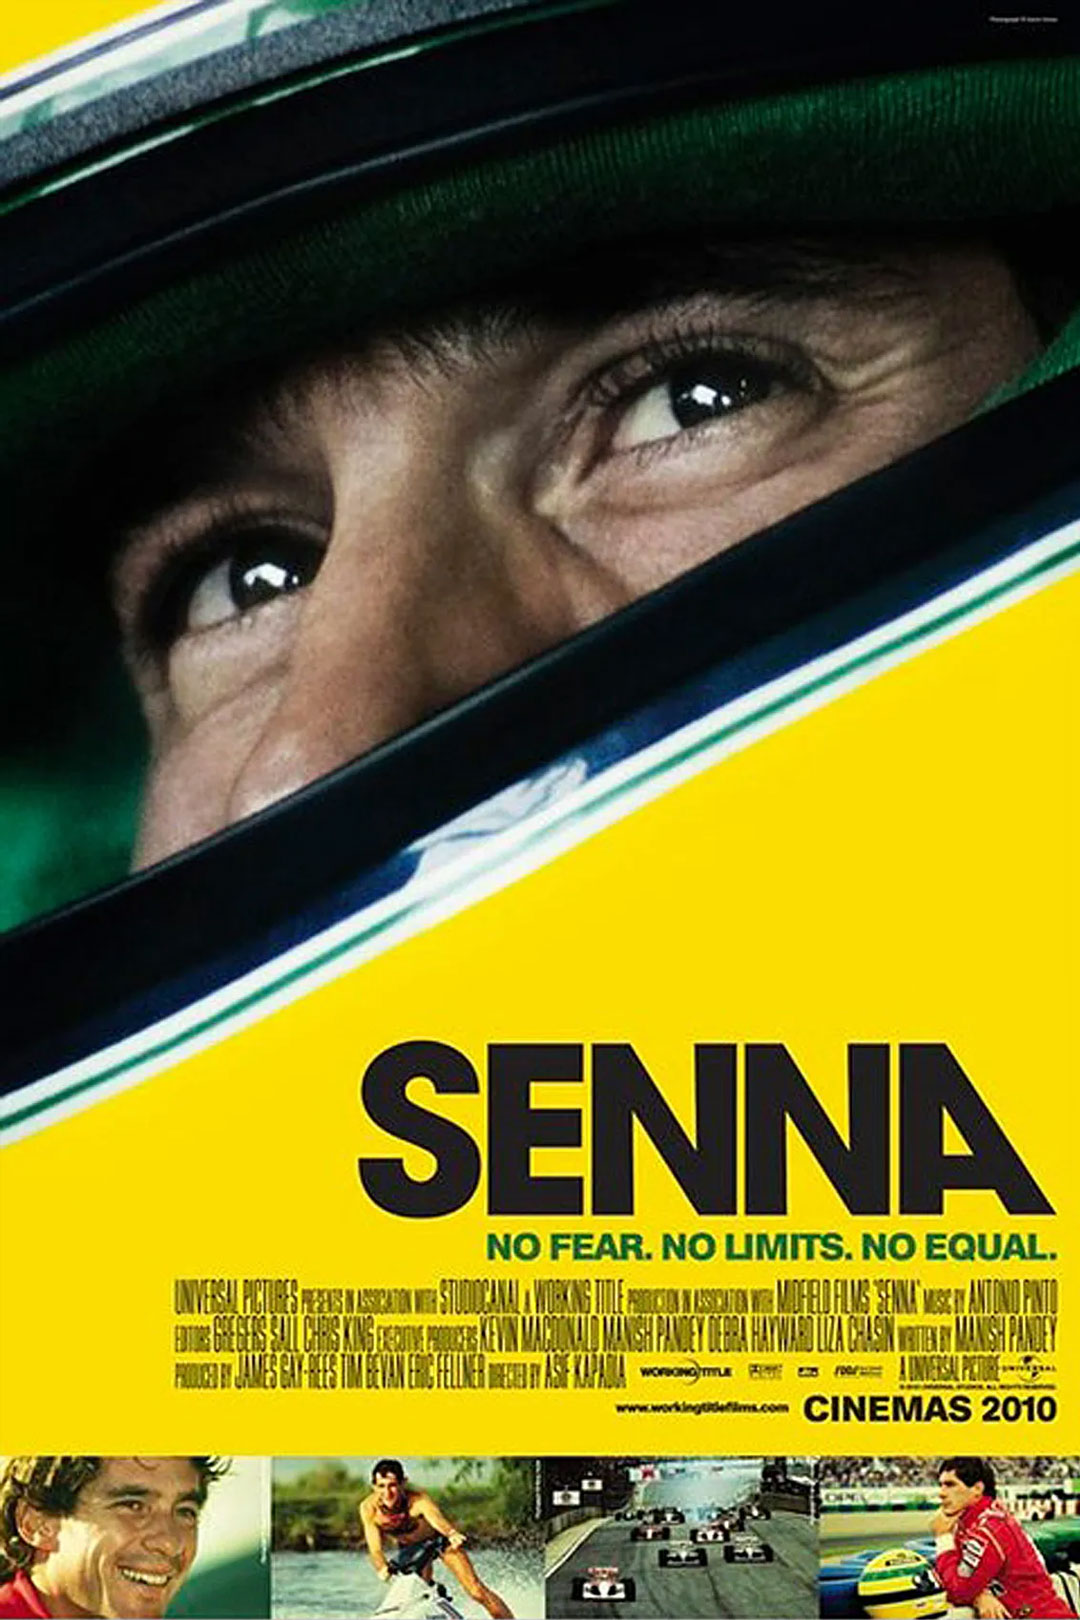 Huyền Thoại Ayrton Senna